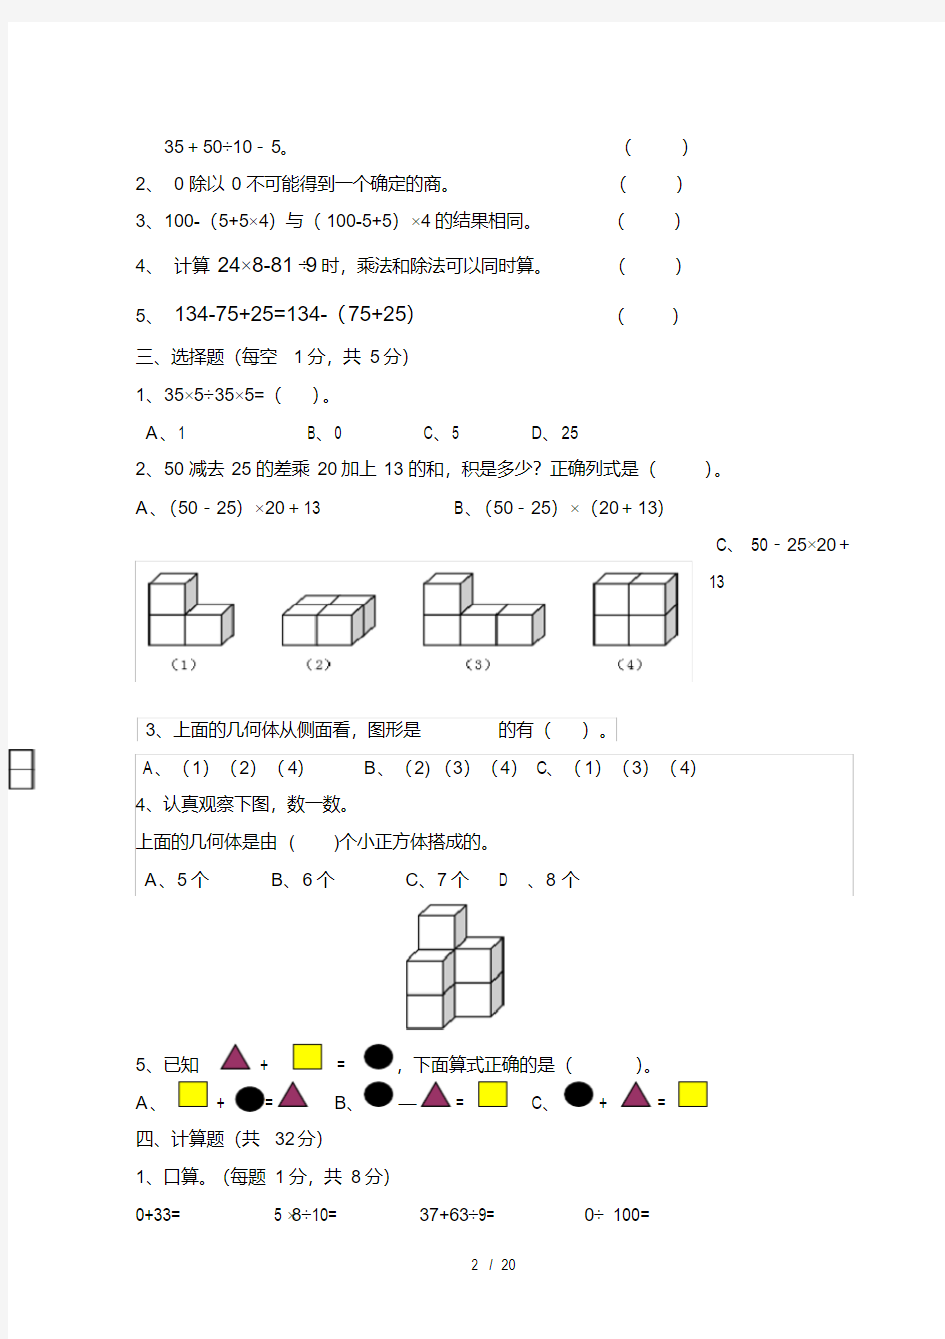 人教版小学四年级数学下册单元复习练习题全套(20200705182313)